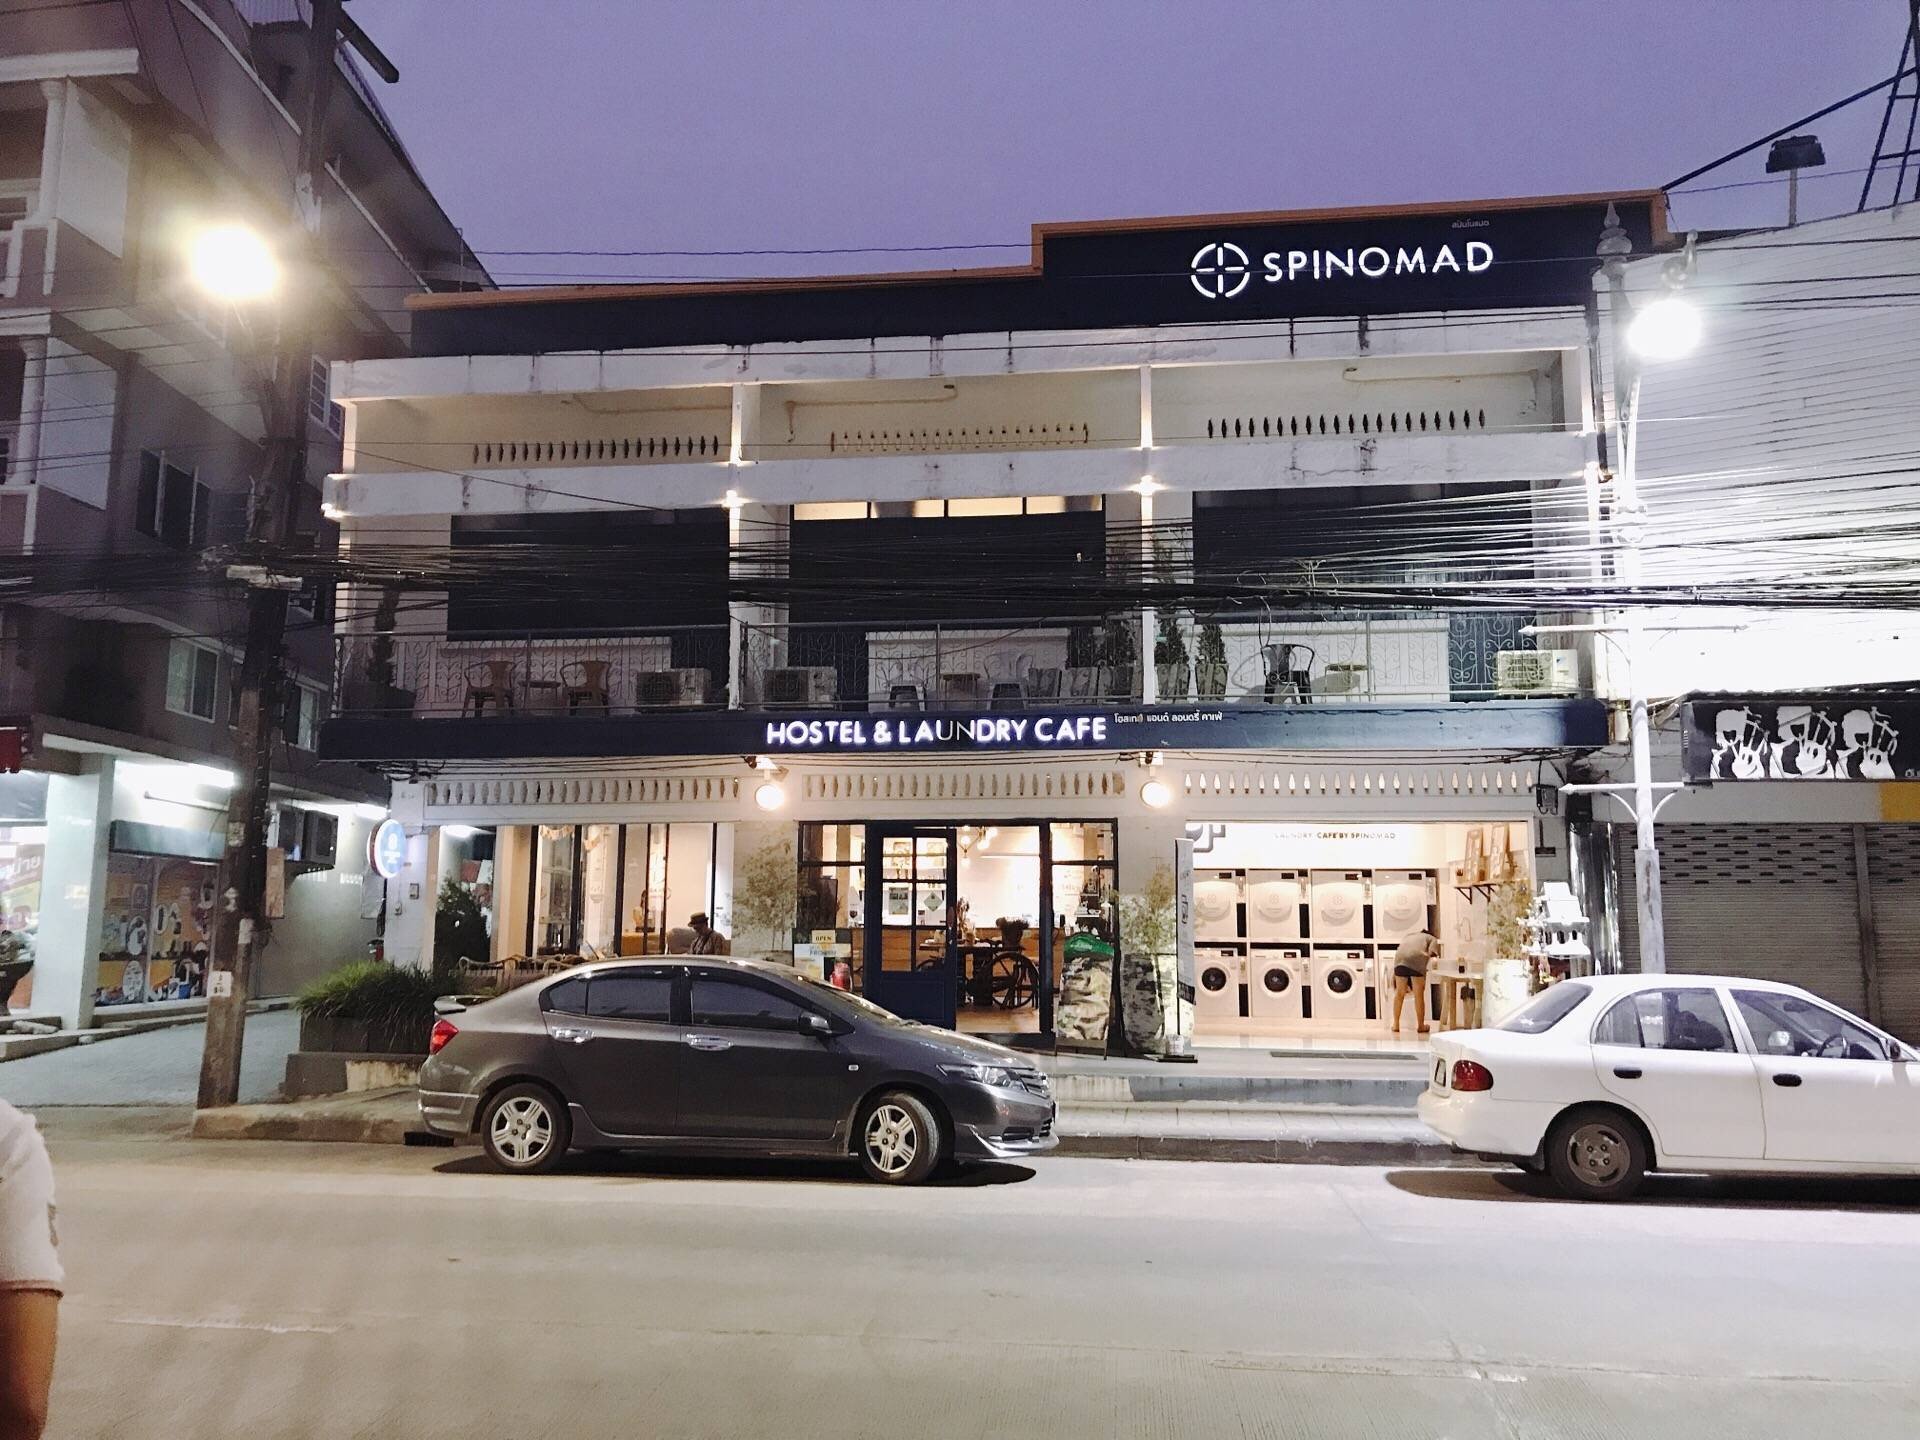 รีวิว SPINOMAD HOSTEL - Hostel เก๋ๆ มีร้านกาแฟ เครื่องซักผ้าในตัว - Wongnai